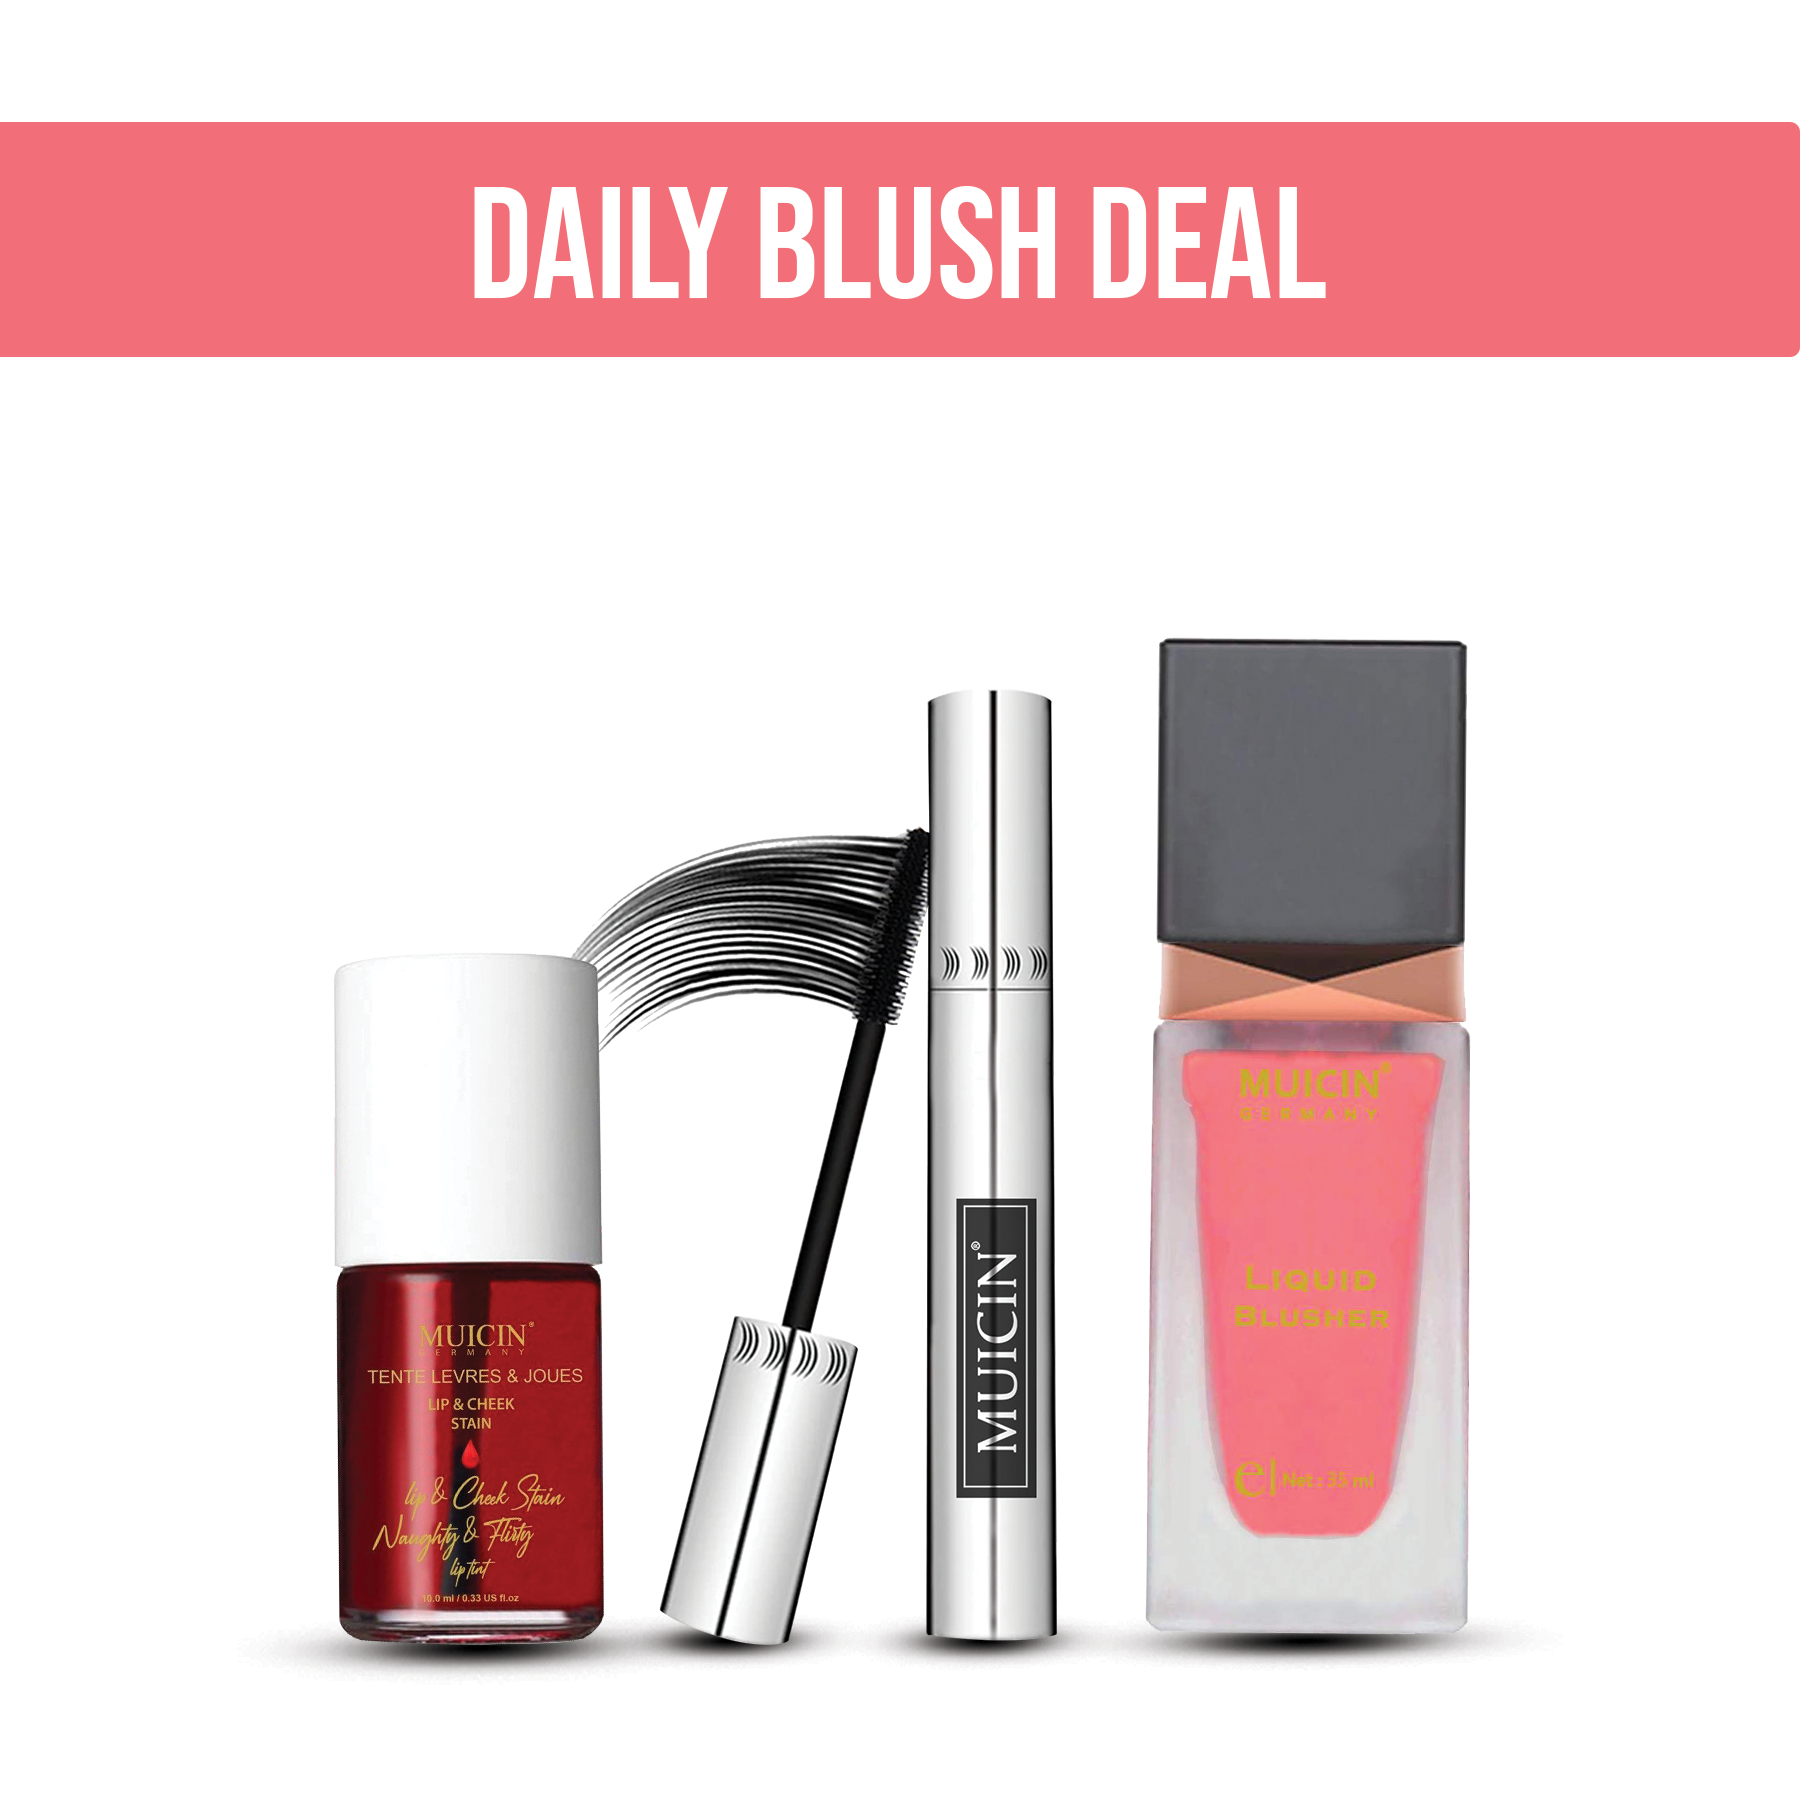 MUICIN - Daily Blush Mascara Deal